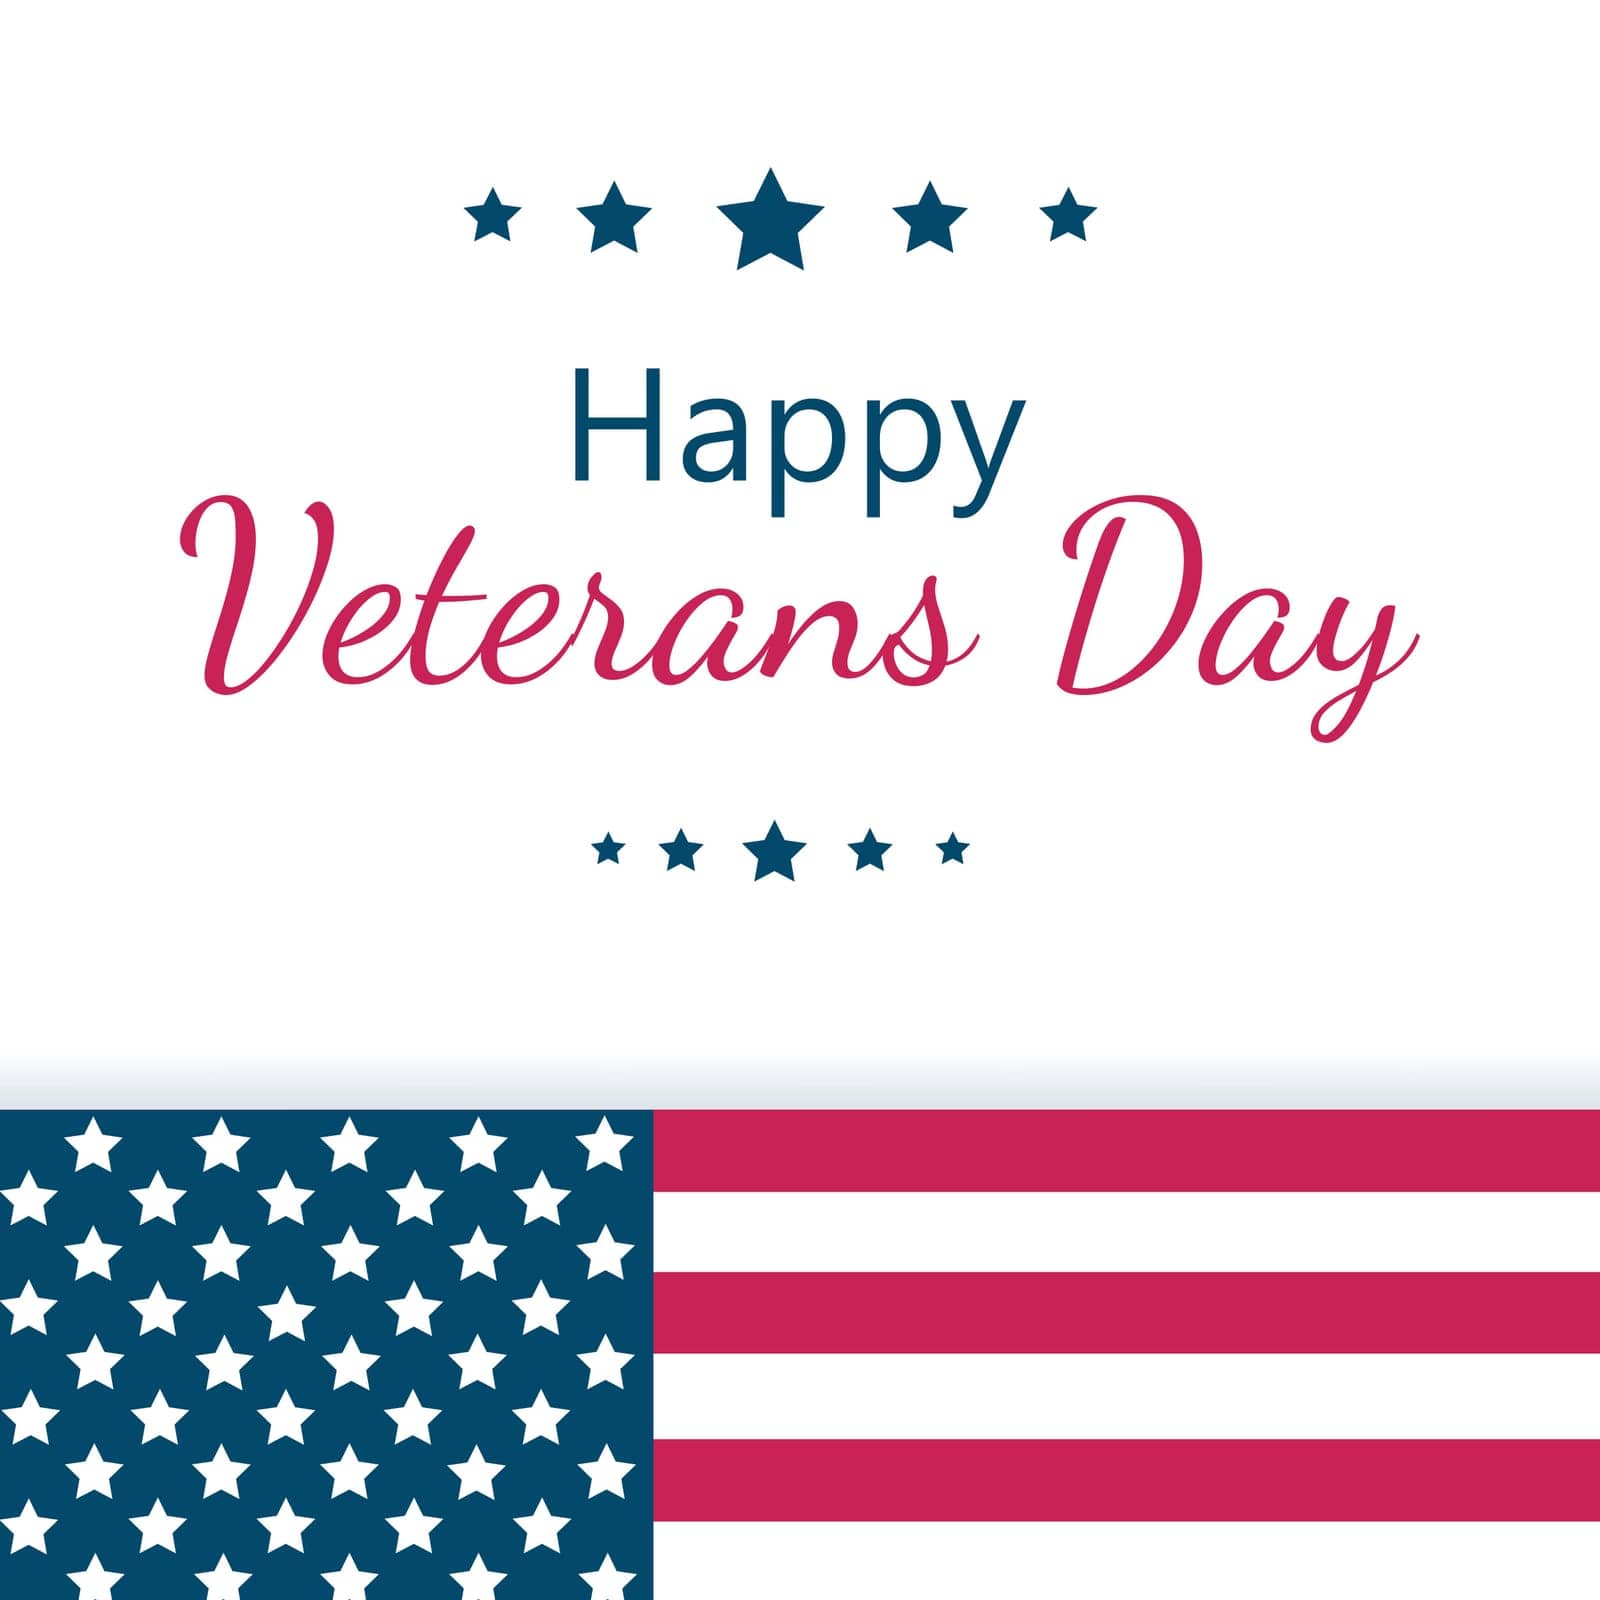 Veterans Day. Vector illustration .USA holidays by Vovmar